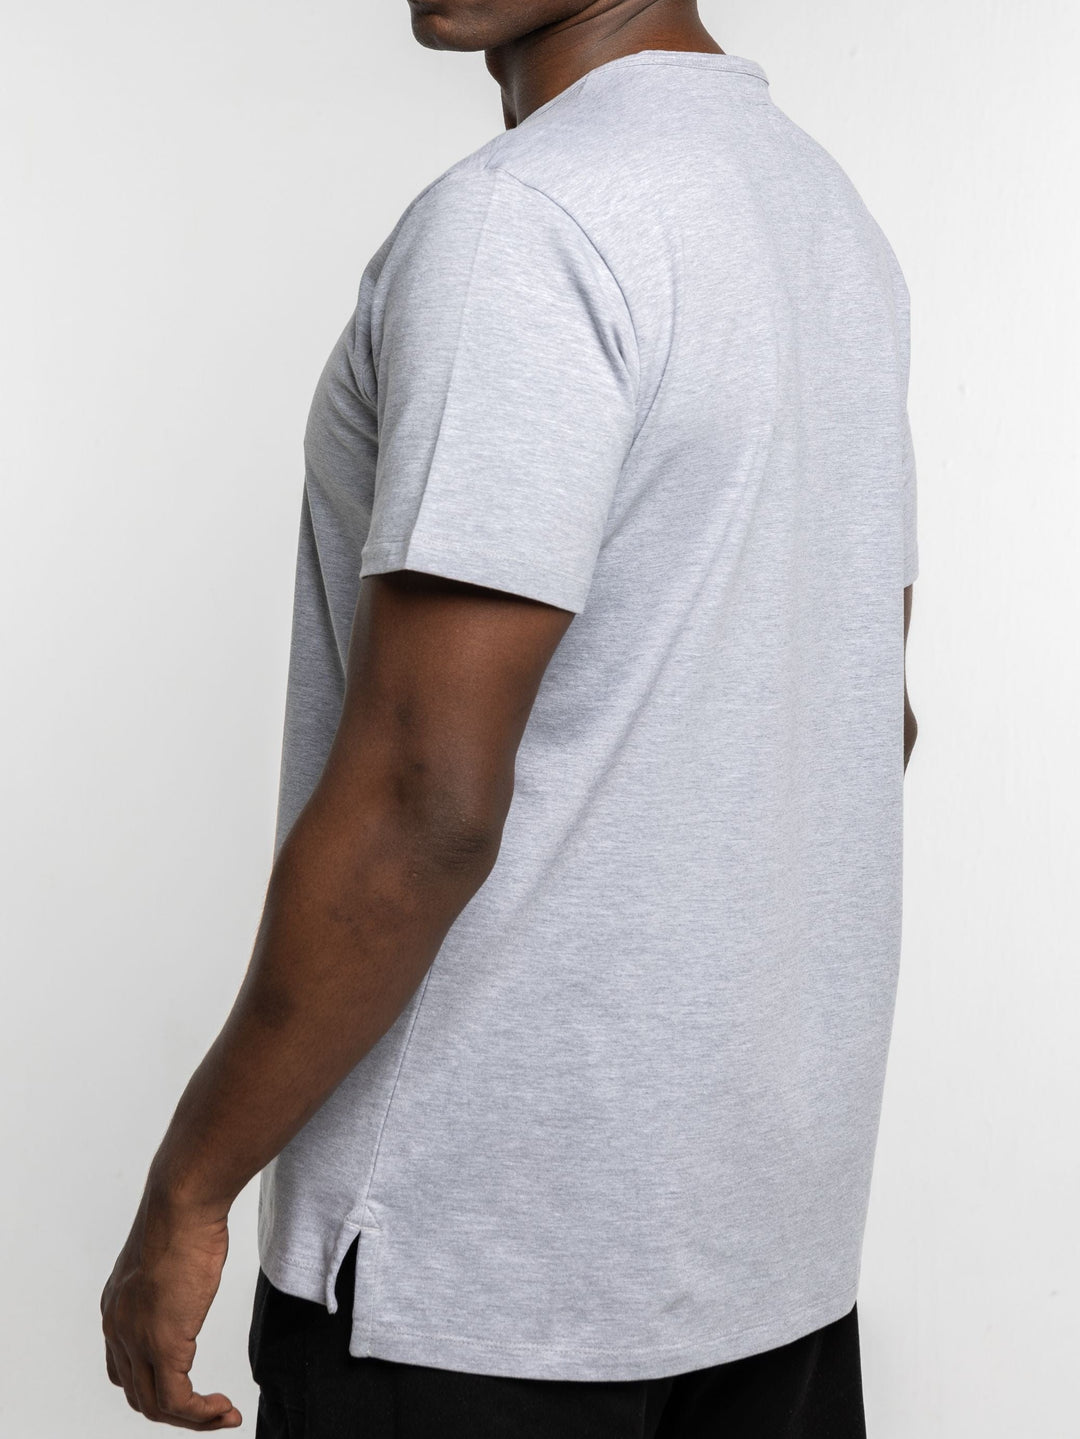 Zhivago x Nuuk Men T-shirt Grey Split Hem T-Shirt: SLS Comfort